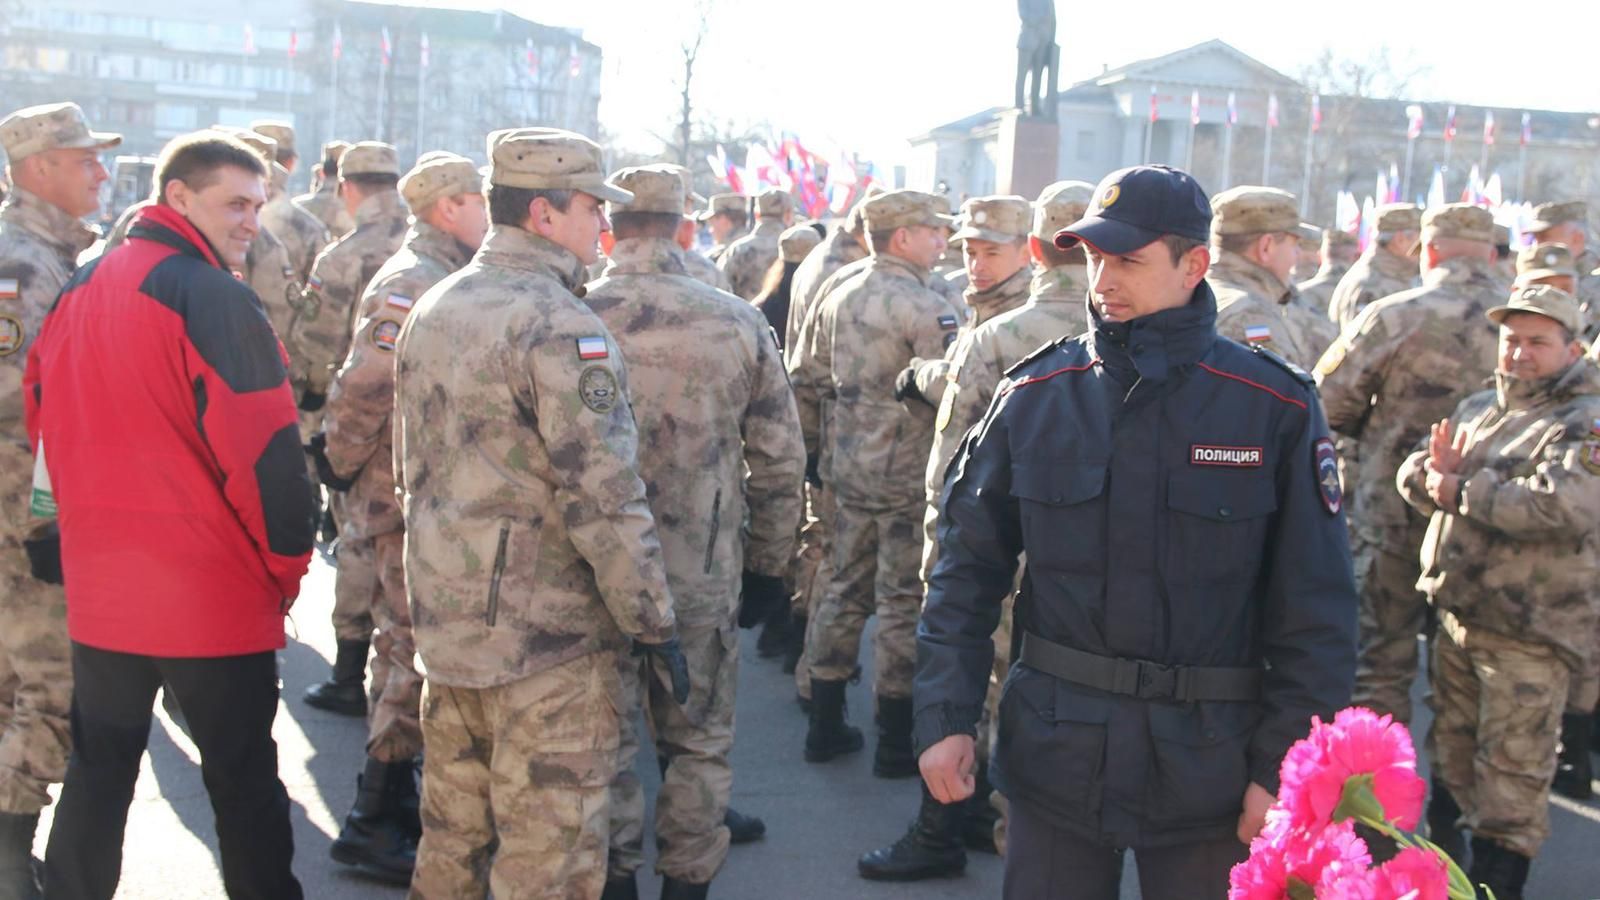 Металлоискатели, рамки и "казаки": как в Крыму отмечают годовщину аннексии